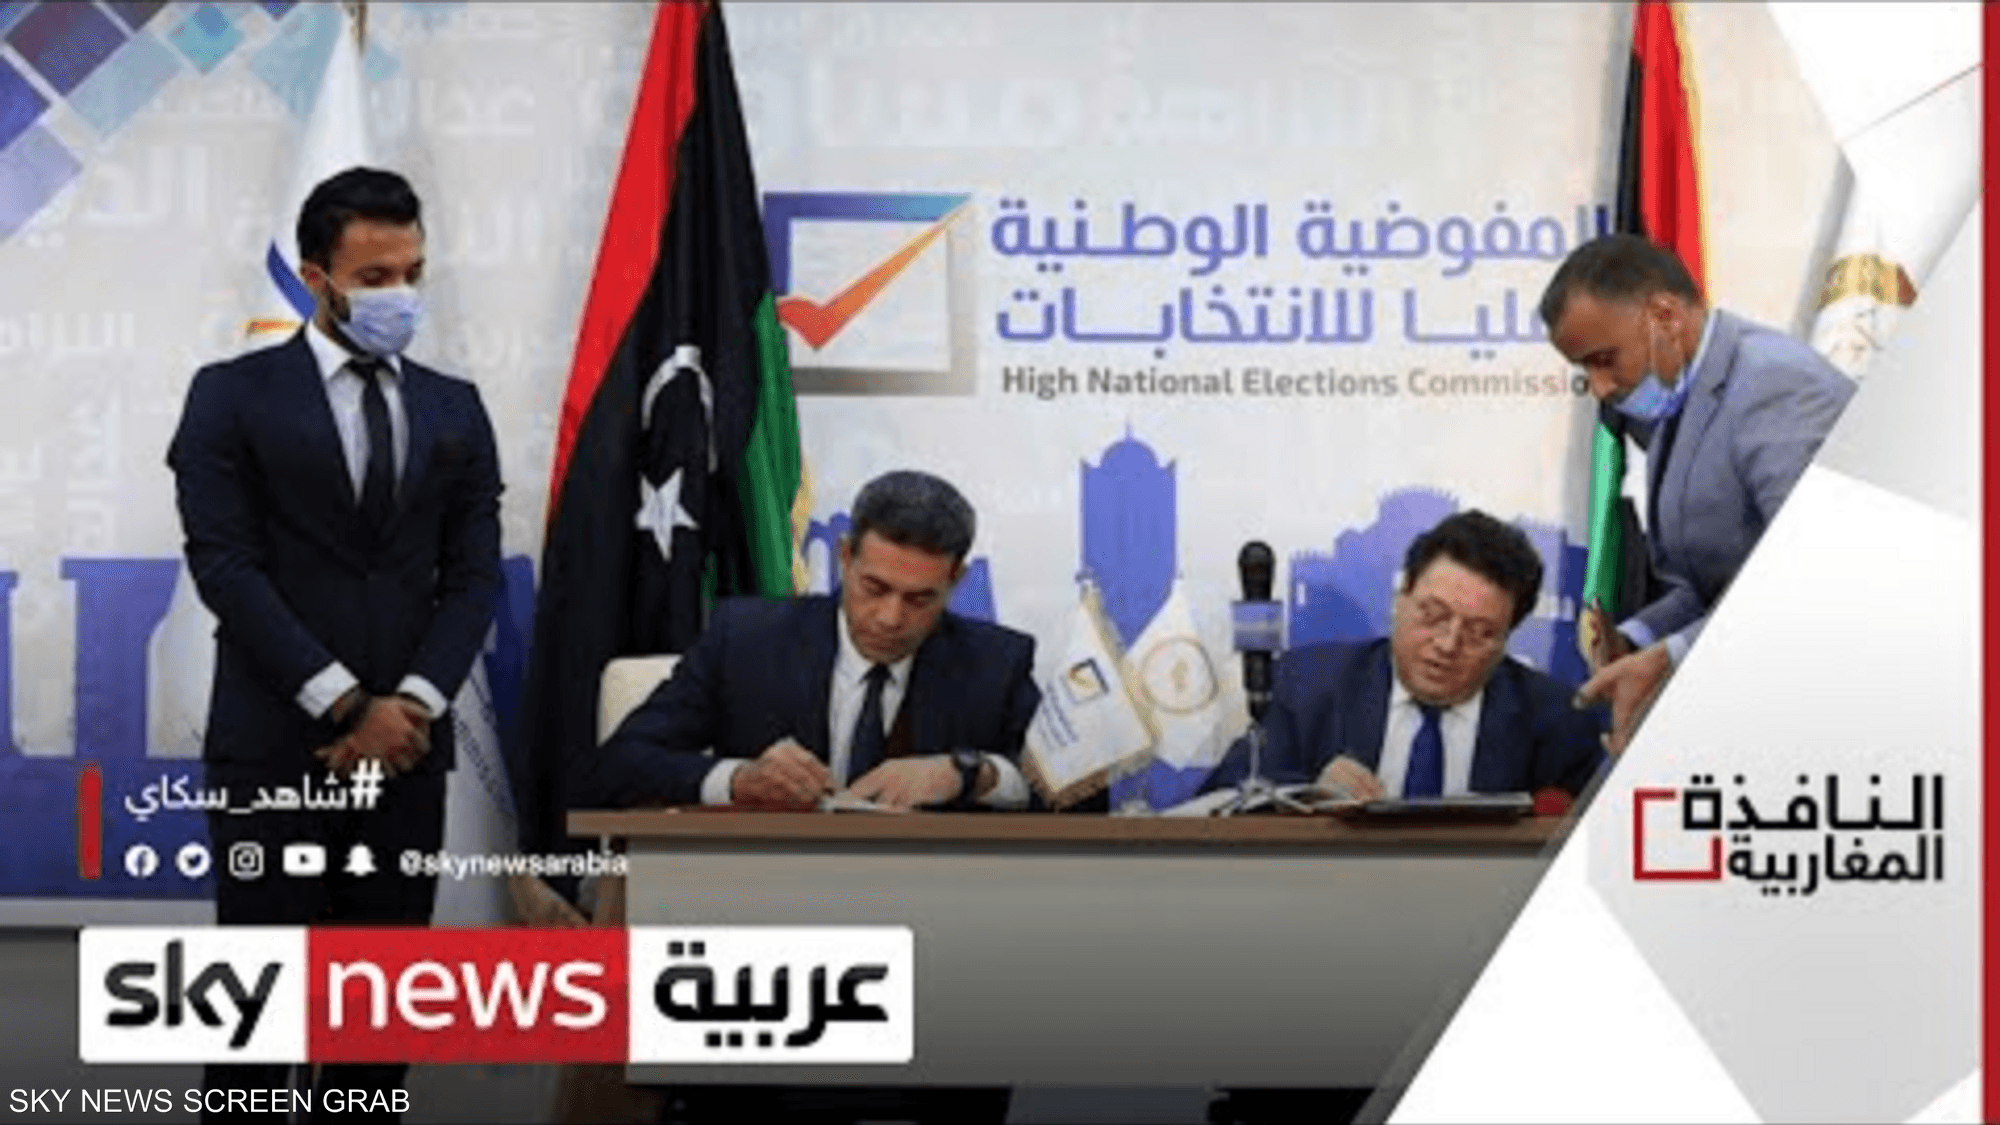 جدل قبول طلبات المرشحين يتصاعد في ليبيا